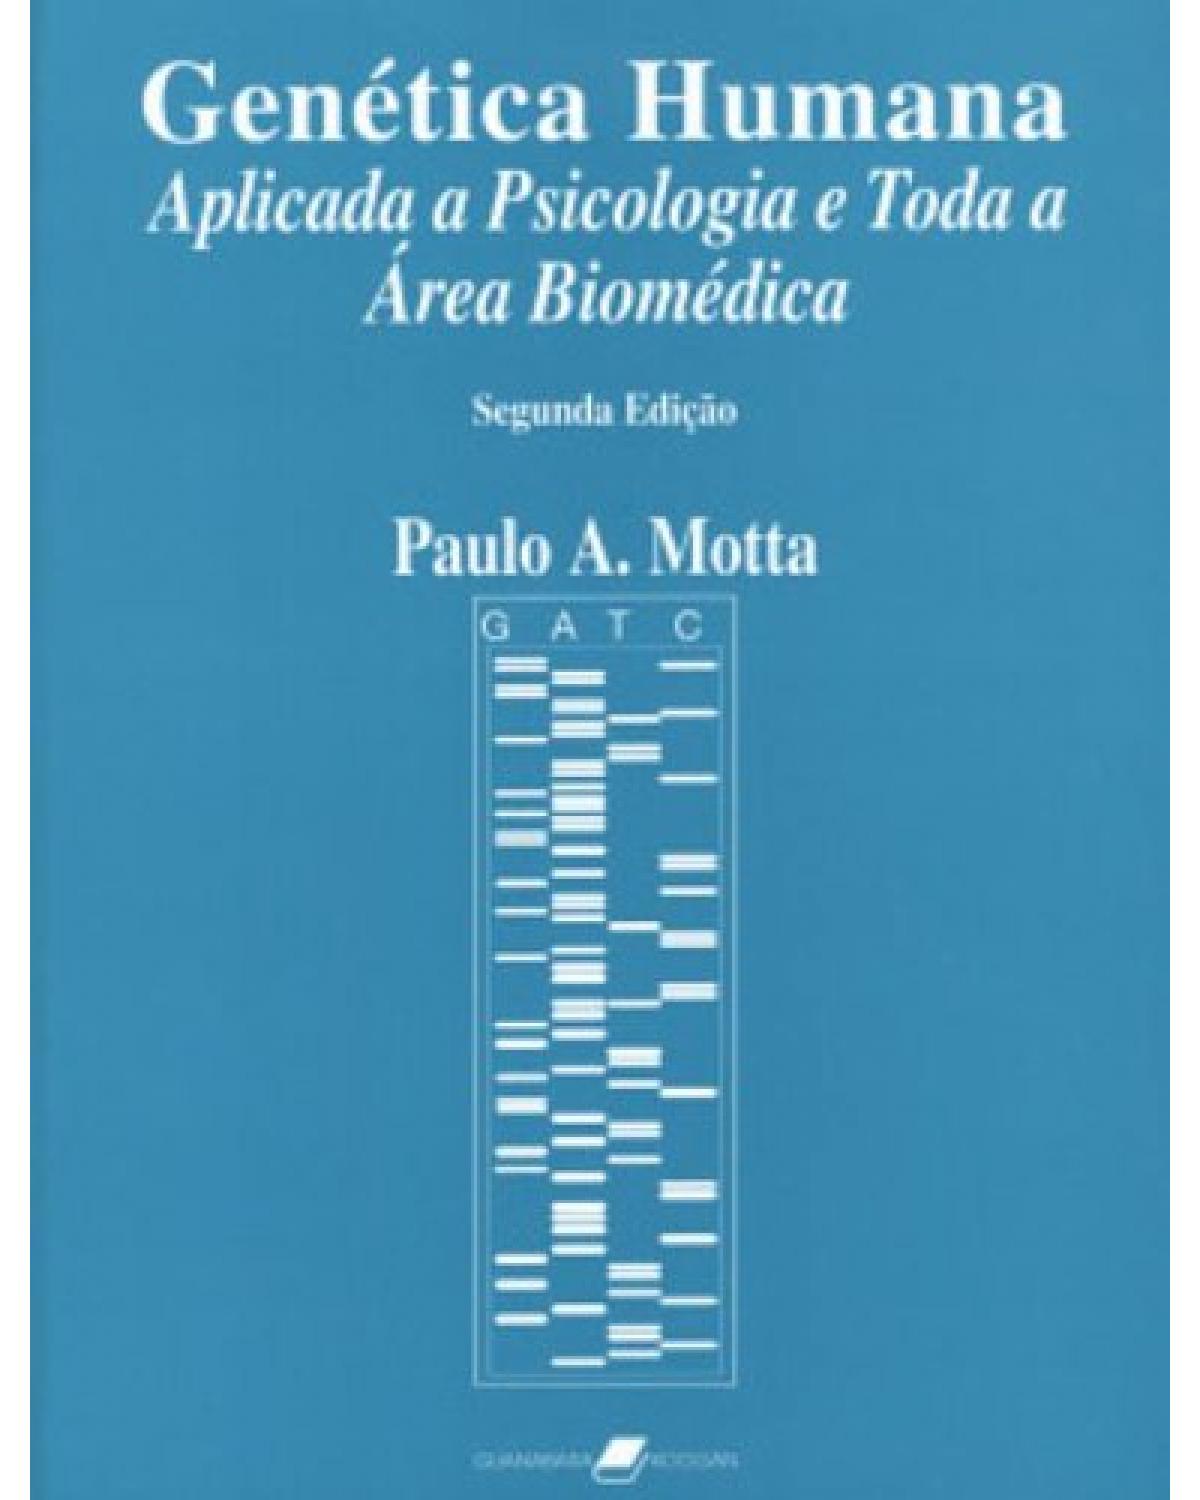 Genética humana aplicada a psicologia e toda a área biomédica - 2ª Edição | 2005